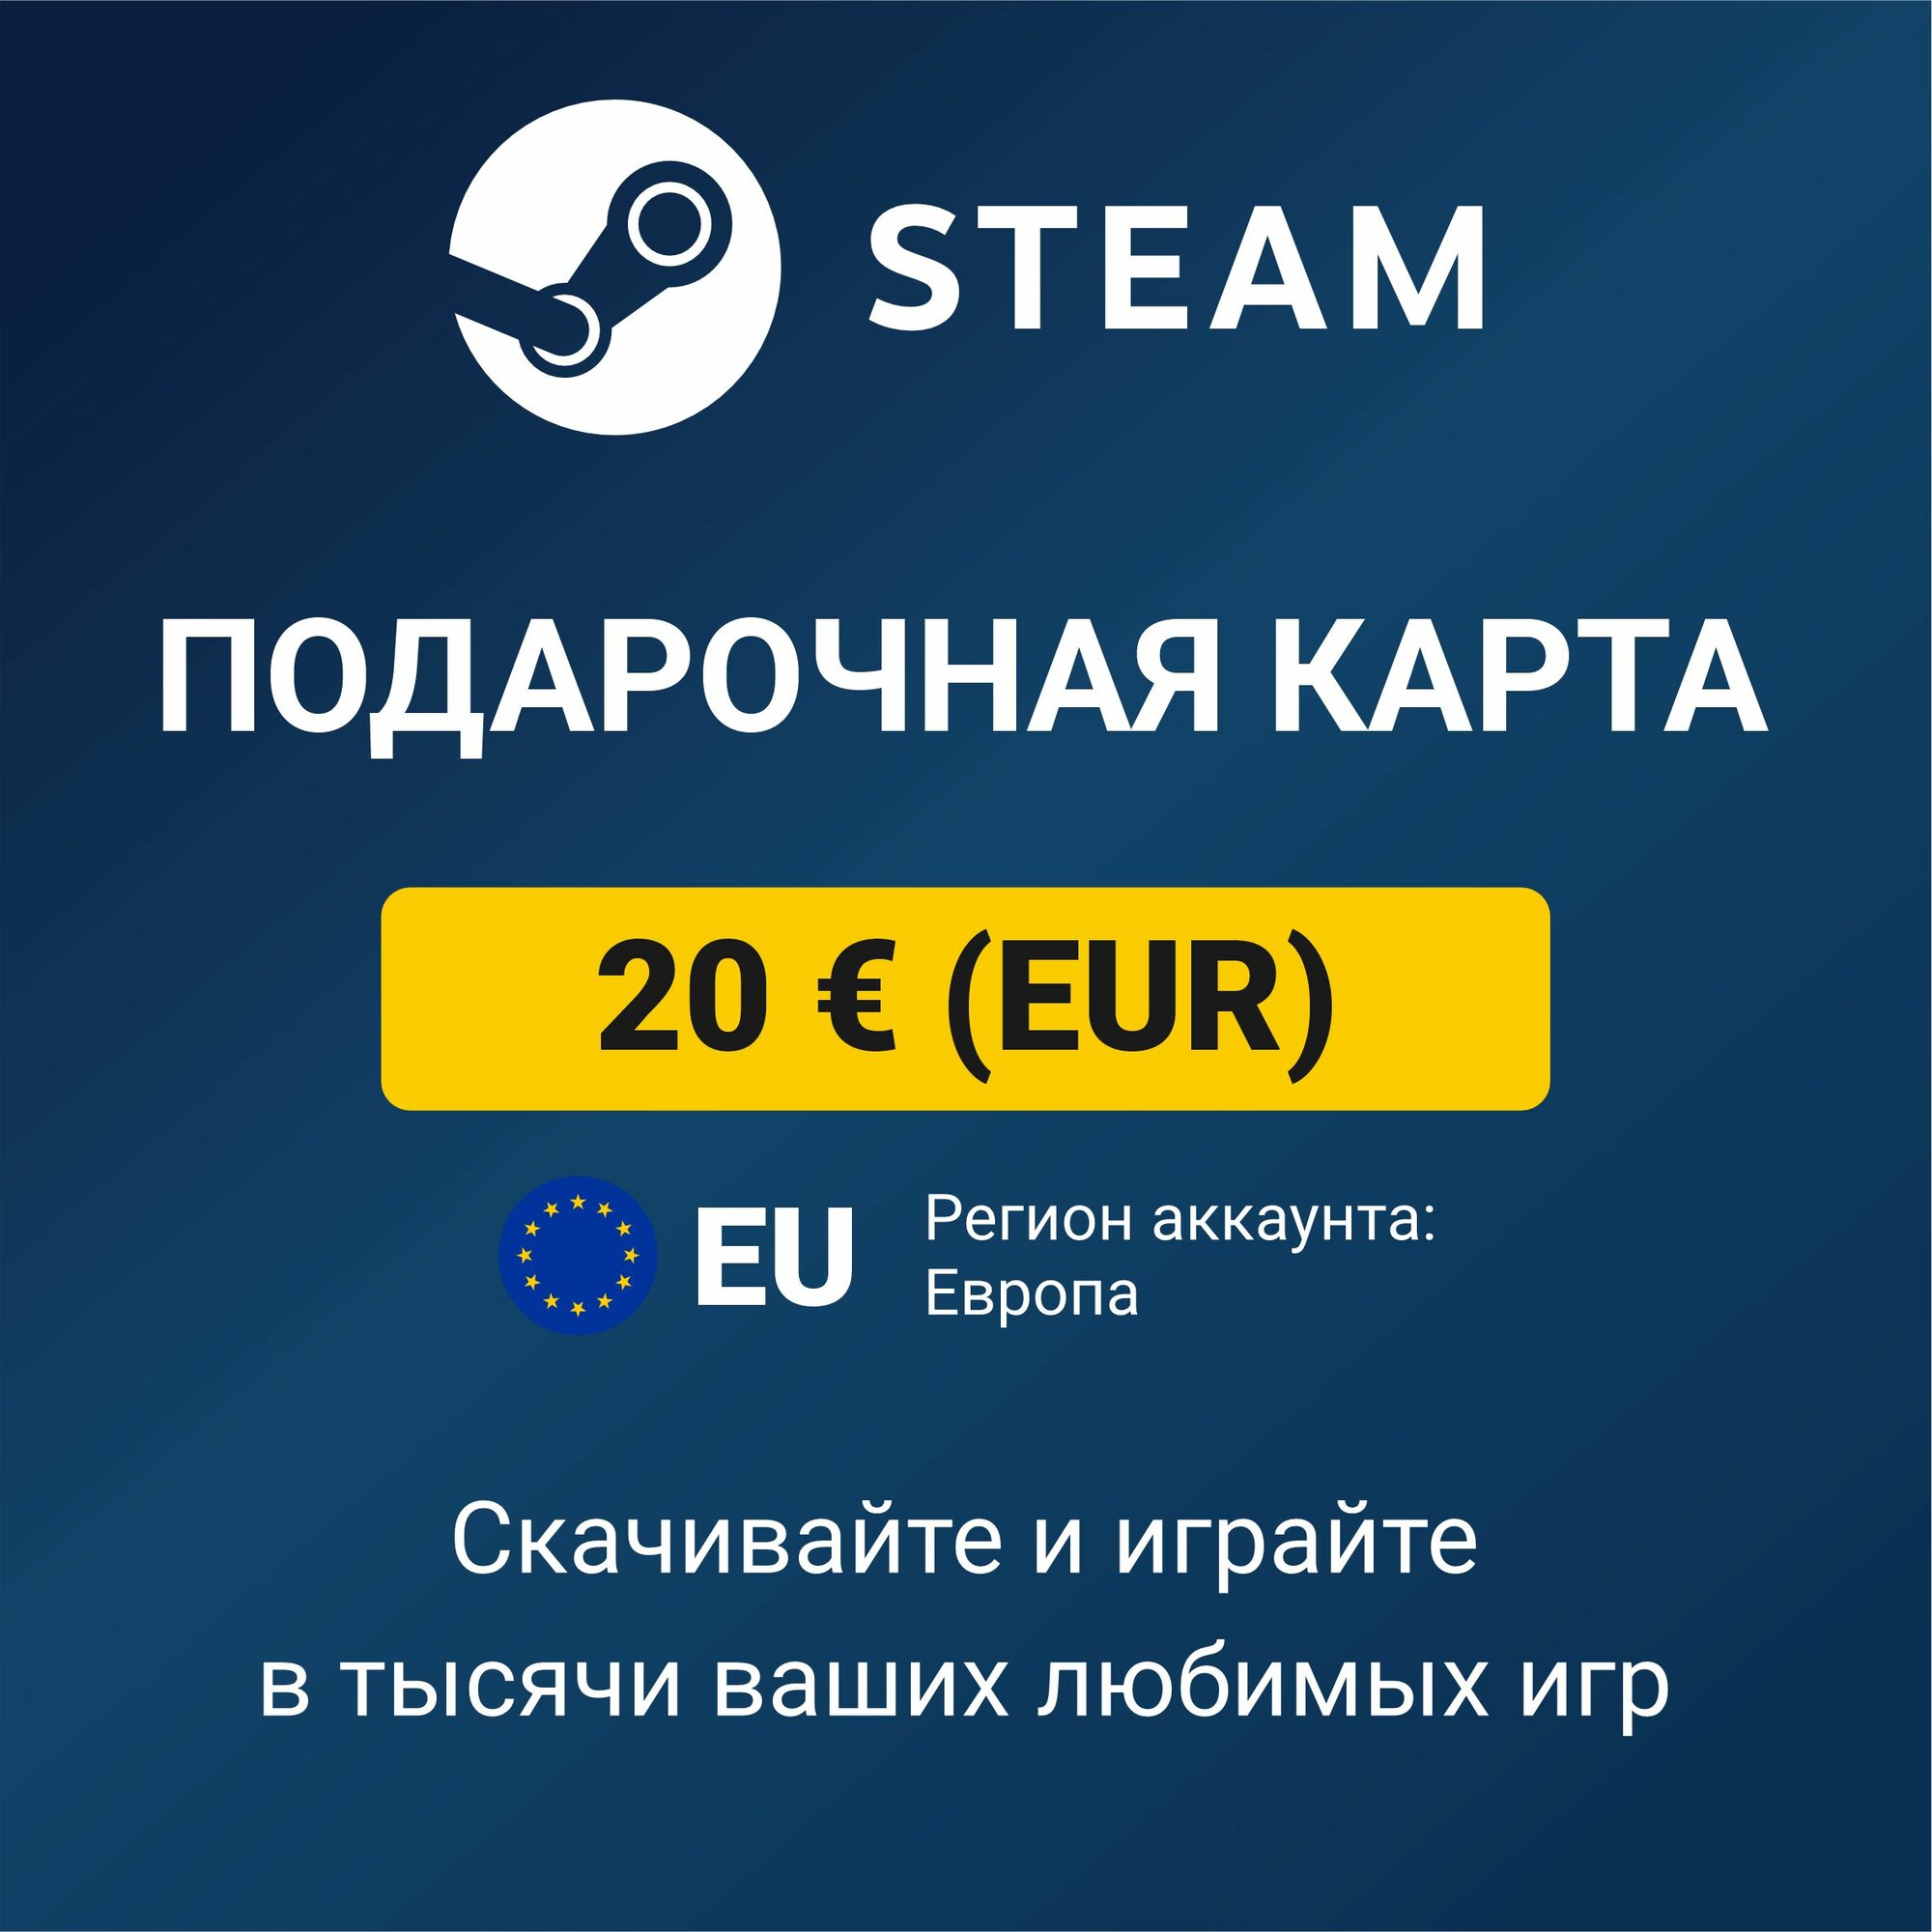 Пополнение кошелька Steam 20 EUR (регион аккаунта: Европа) цифровой код активации/подарочная карта